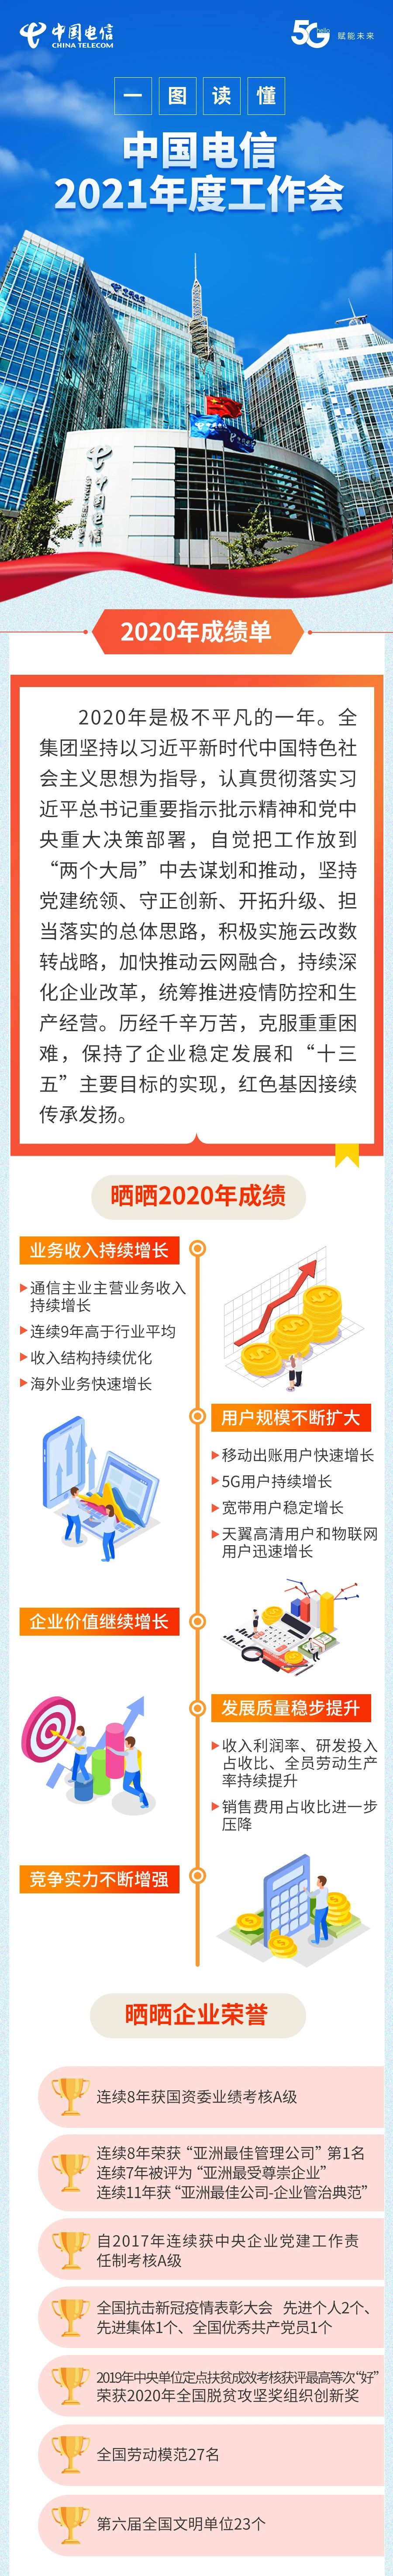 一图解读中国电信2021年度工作会